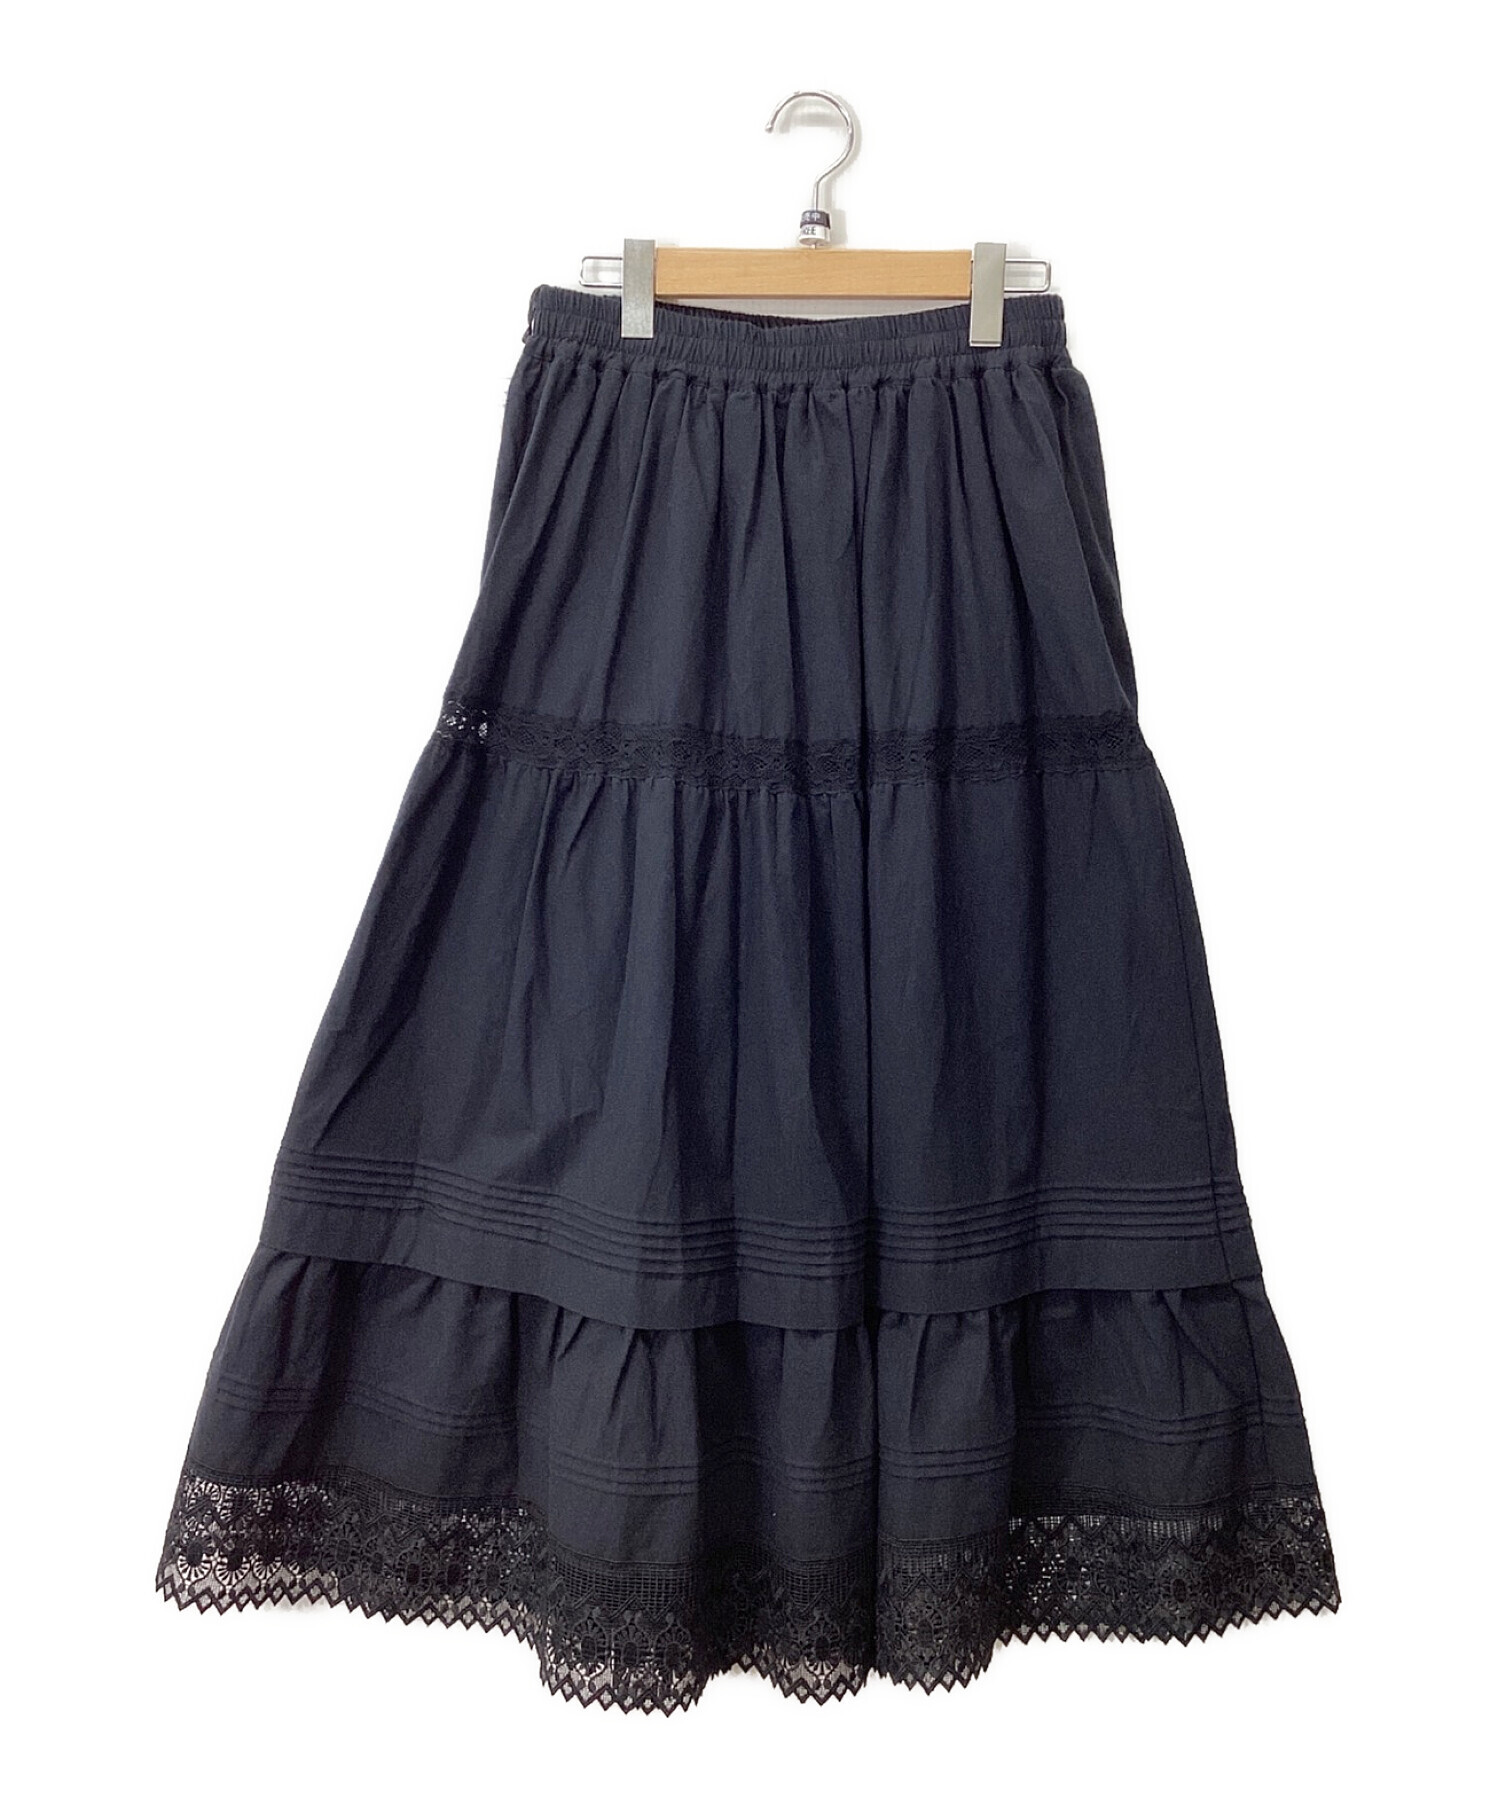 Samansa Mos2 (サマンサモスモス) 裾レースティアードスカート ブラック サイズ:FREE 未使用品